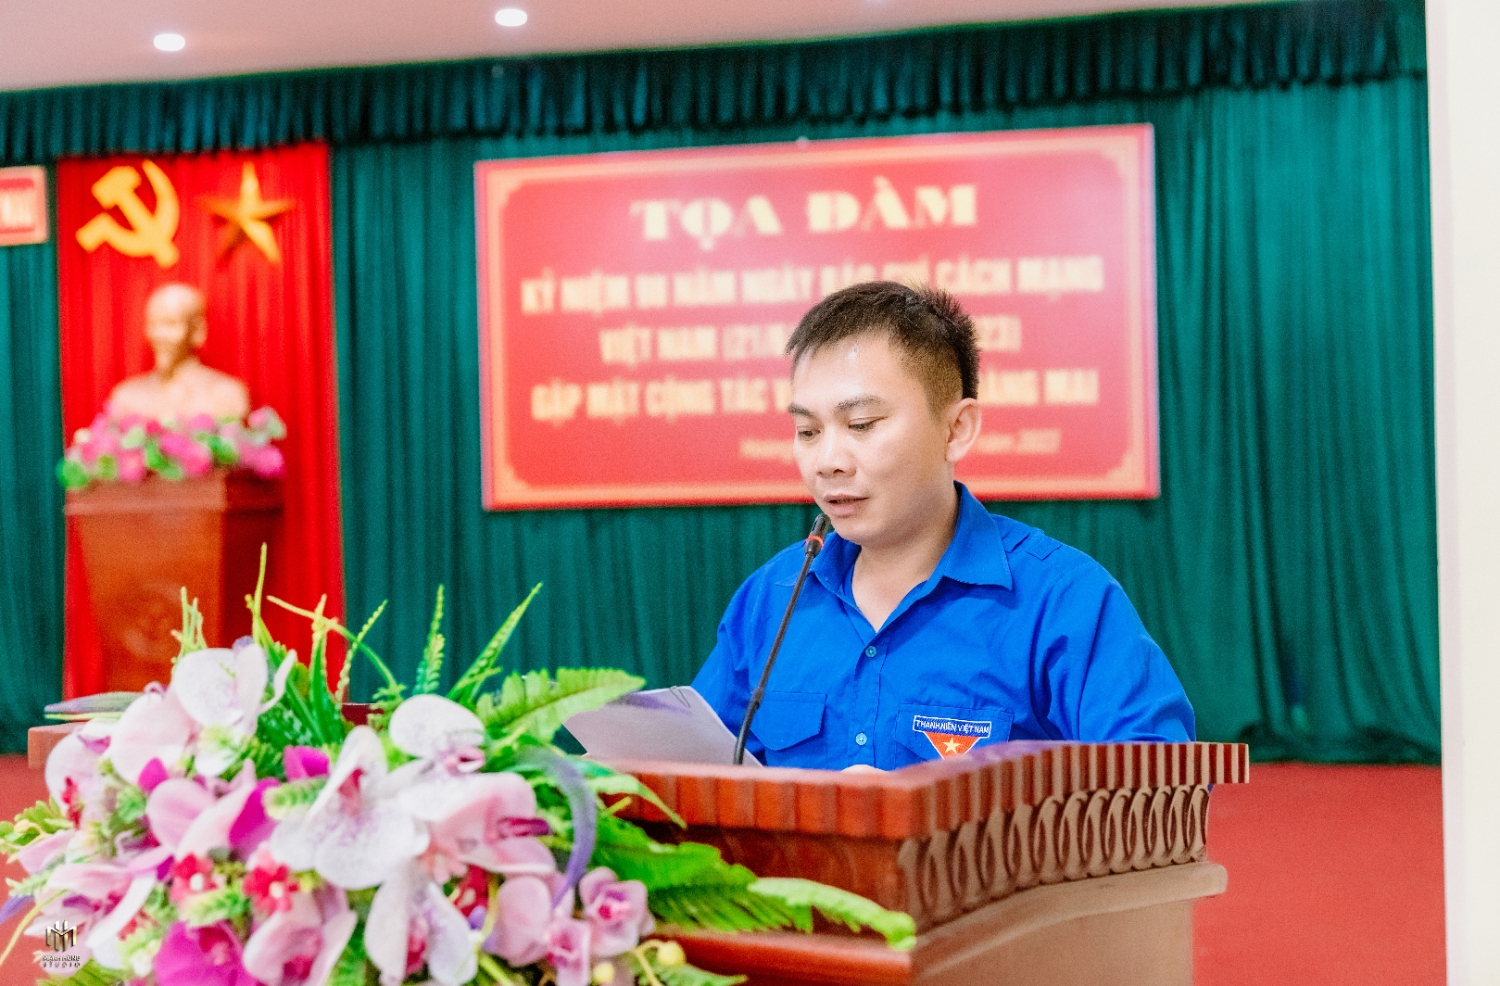 Đồng chí Nguyễn Văn Đức, Bí thư Thị đoàn Hoàng Mai, tham luận trong Buổi Toạ đàm.